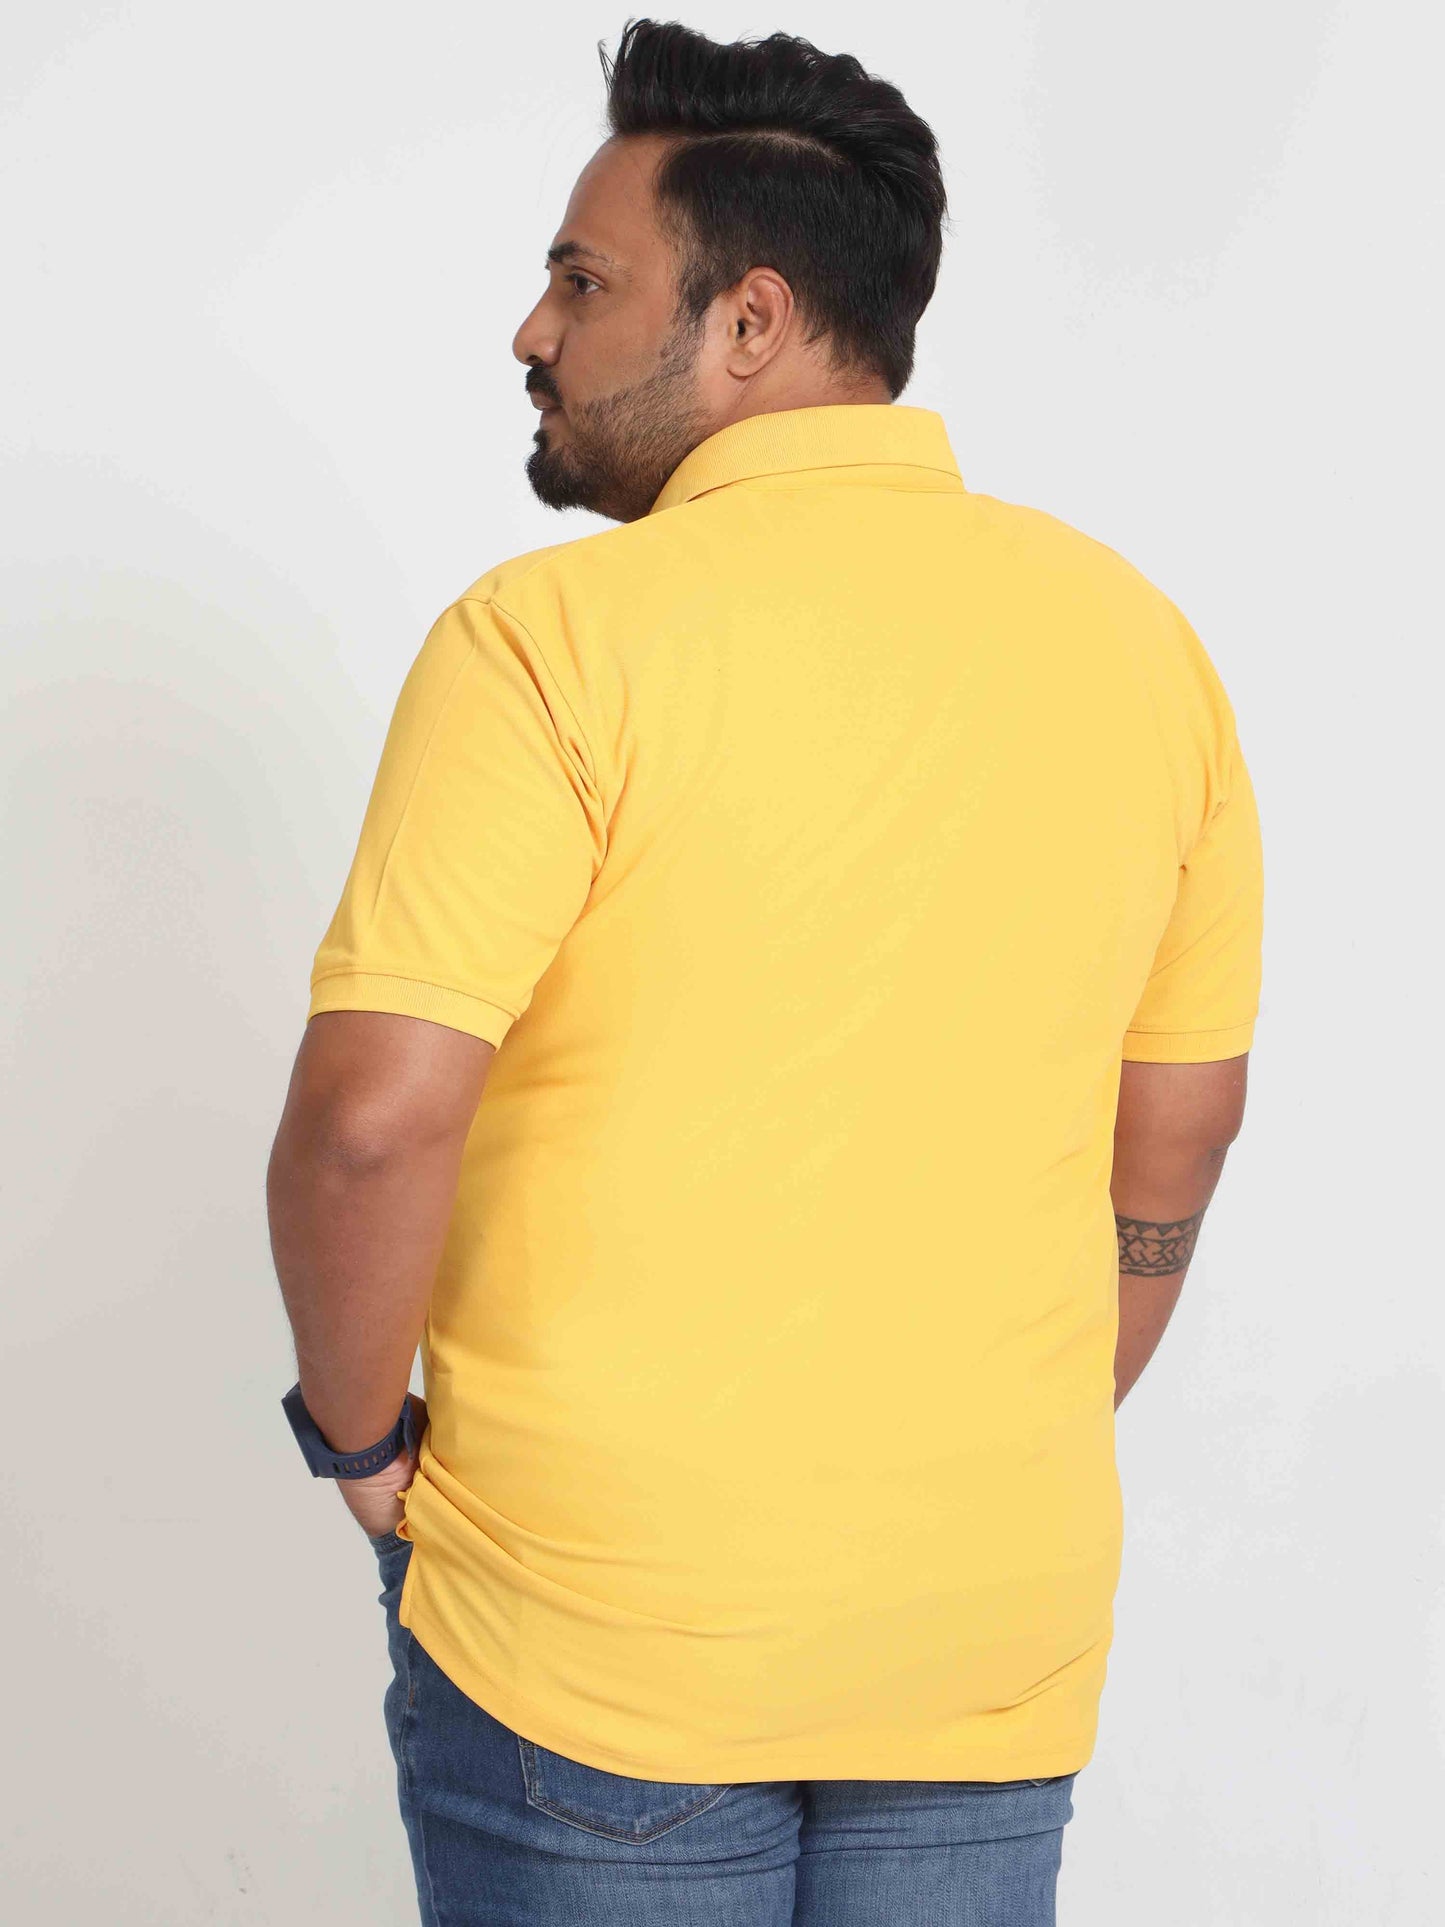 Plus Size Banana Yellow Men's Polo T-shirt